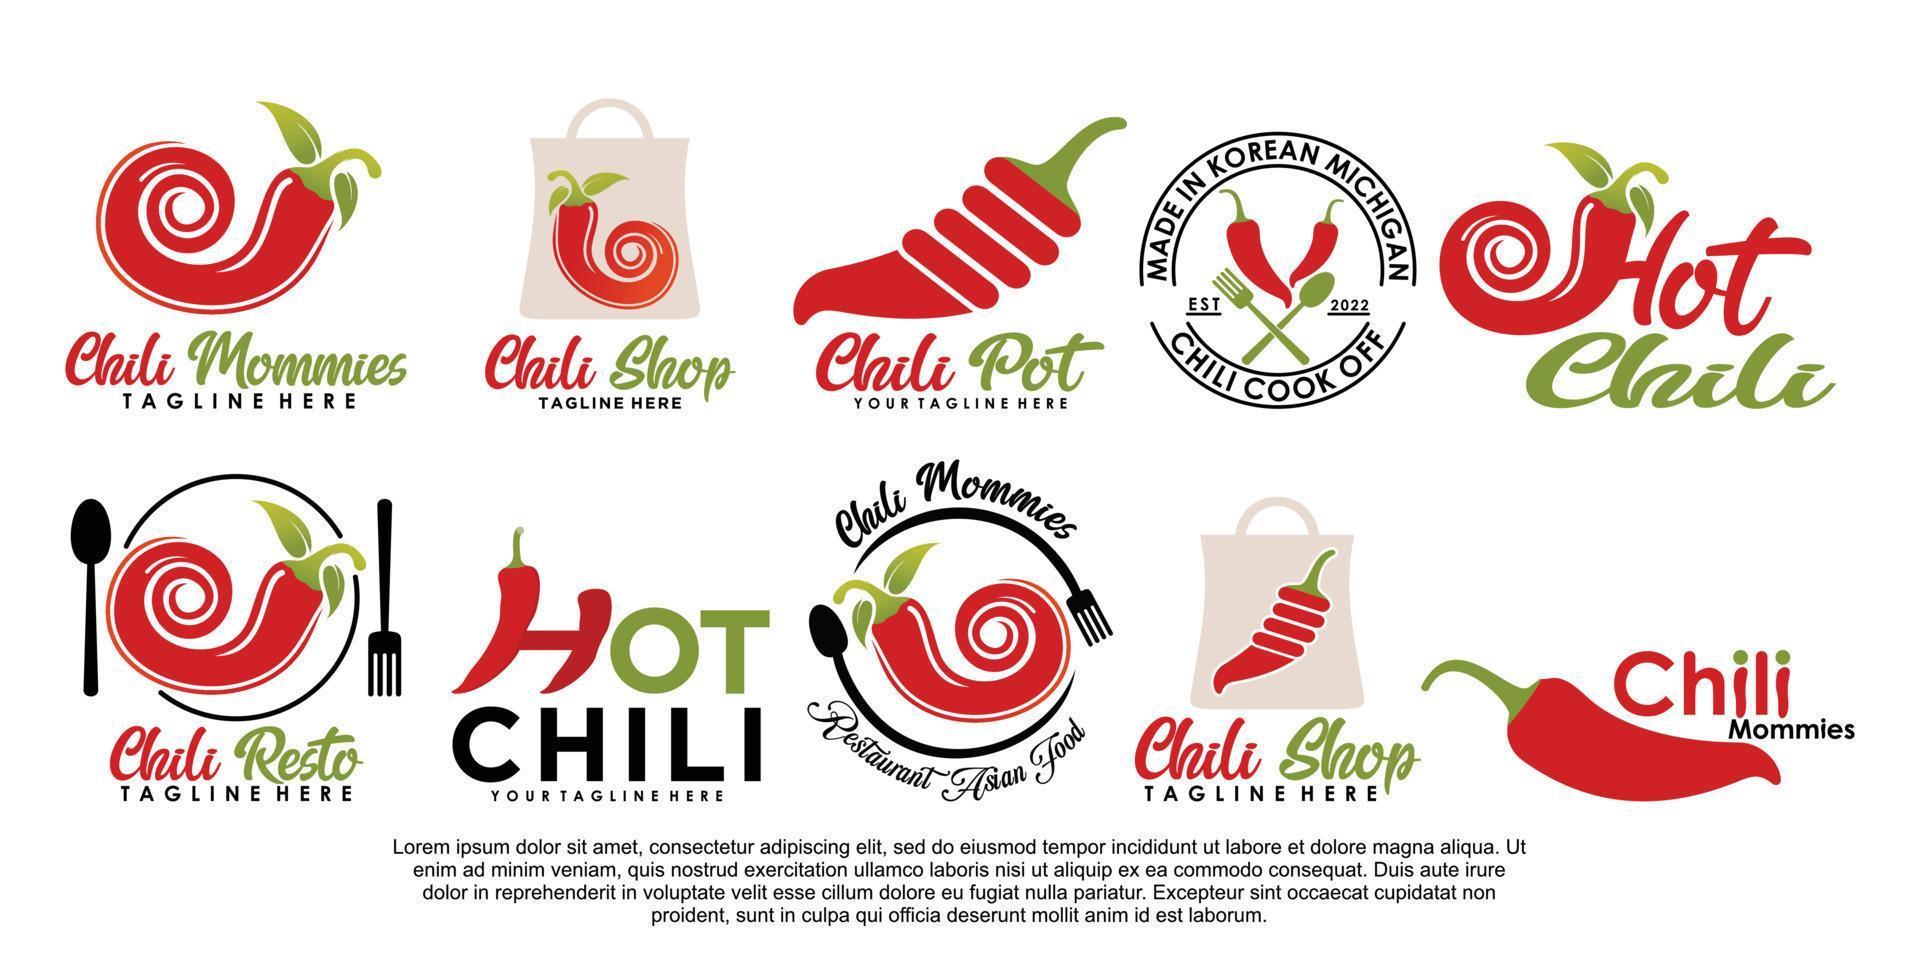 Chili logo design unique with element simple concept Premium Vector